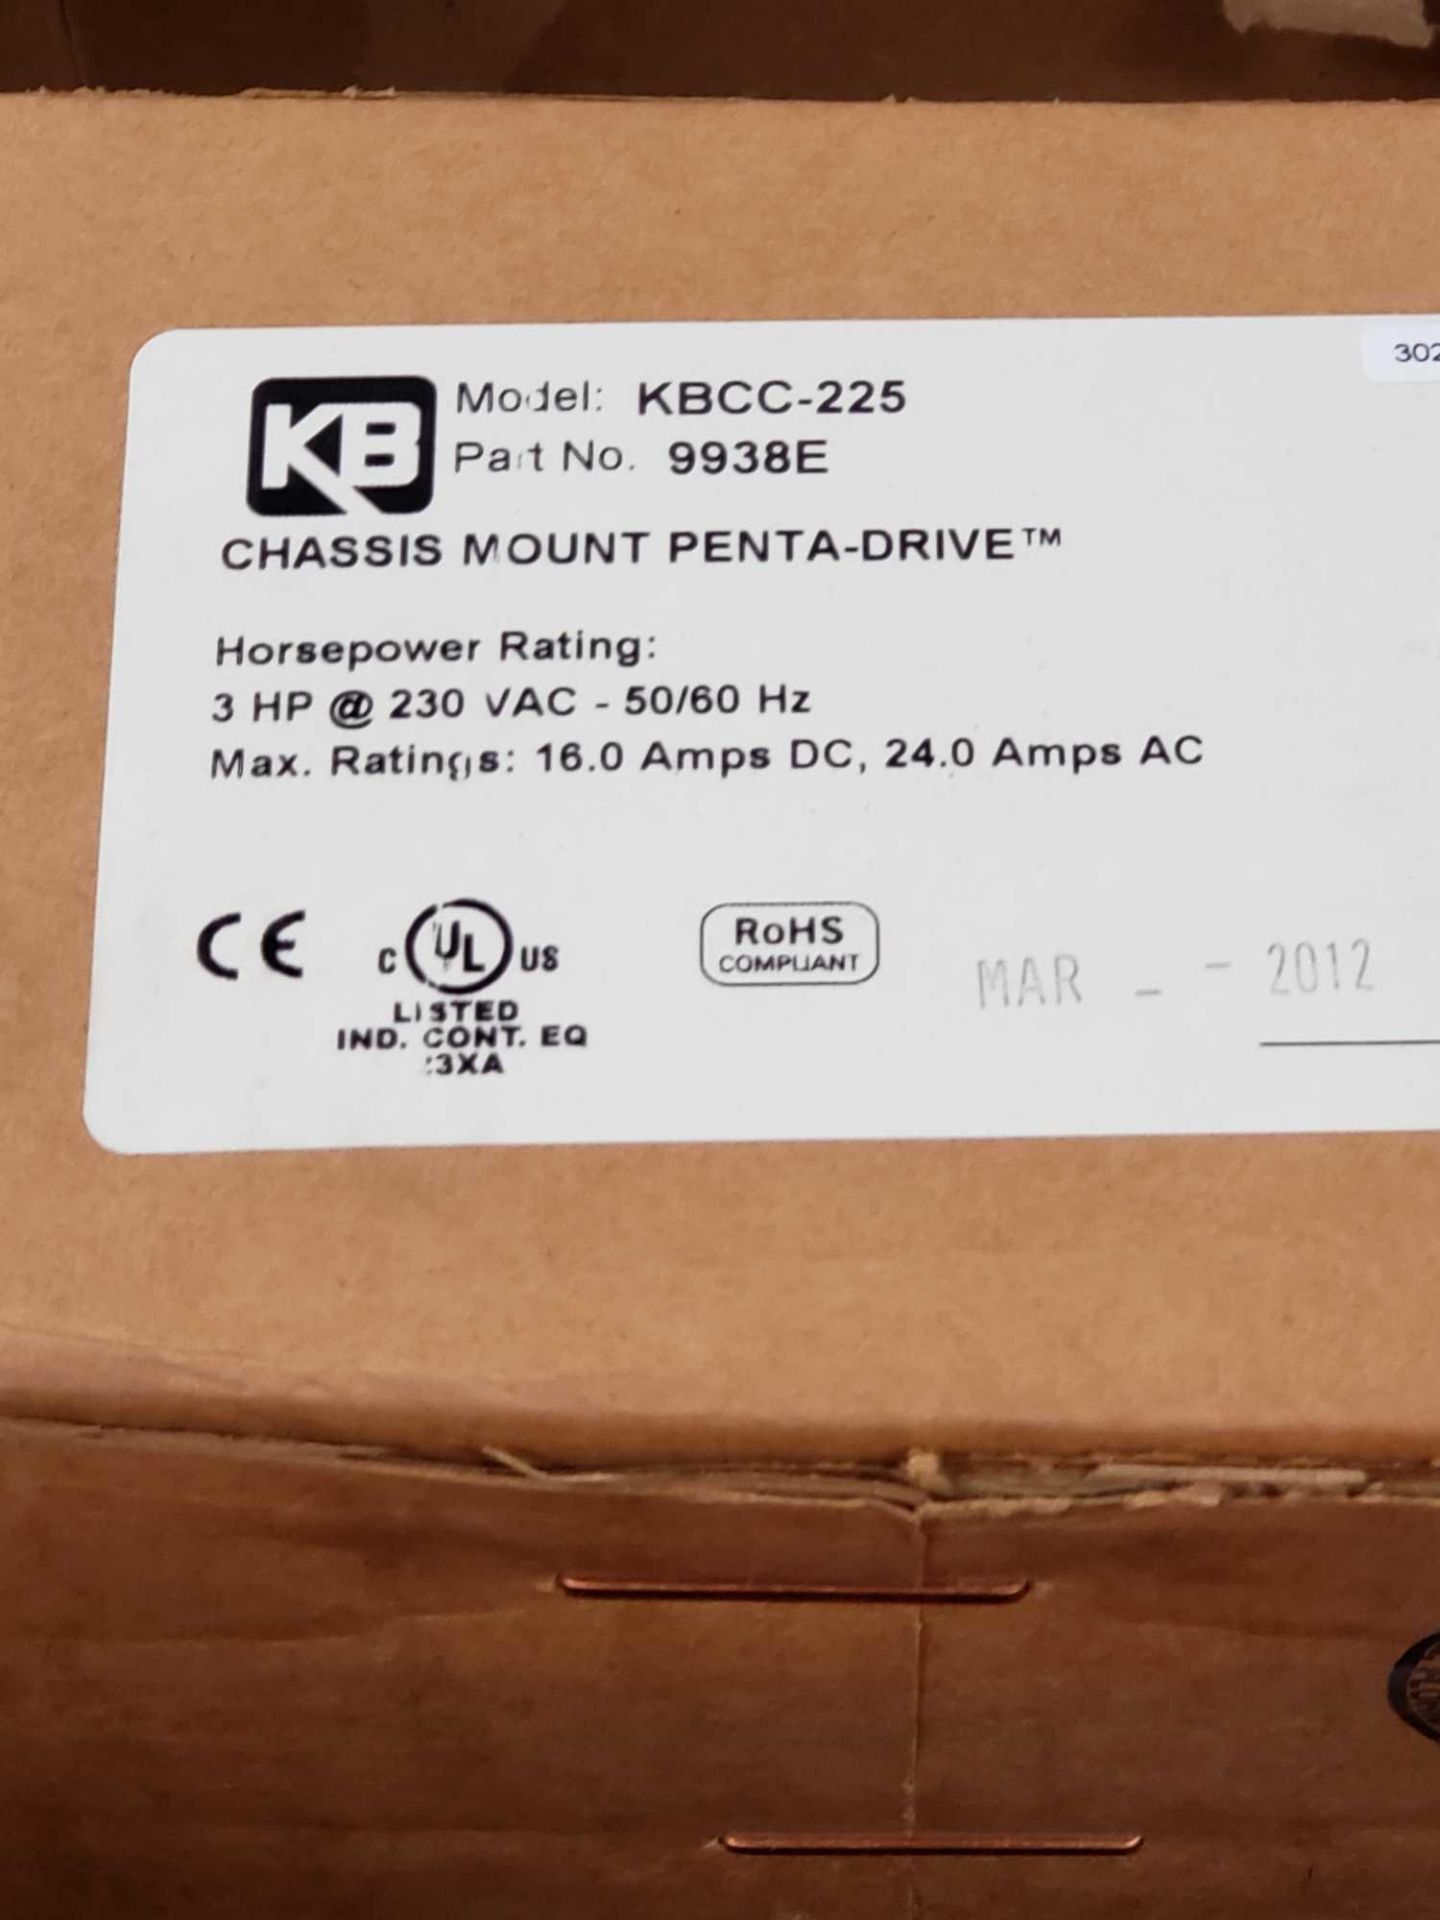 KB Penta-drive model KBCC-225. New in sealed box. - Image 2 of 2